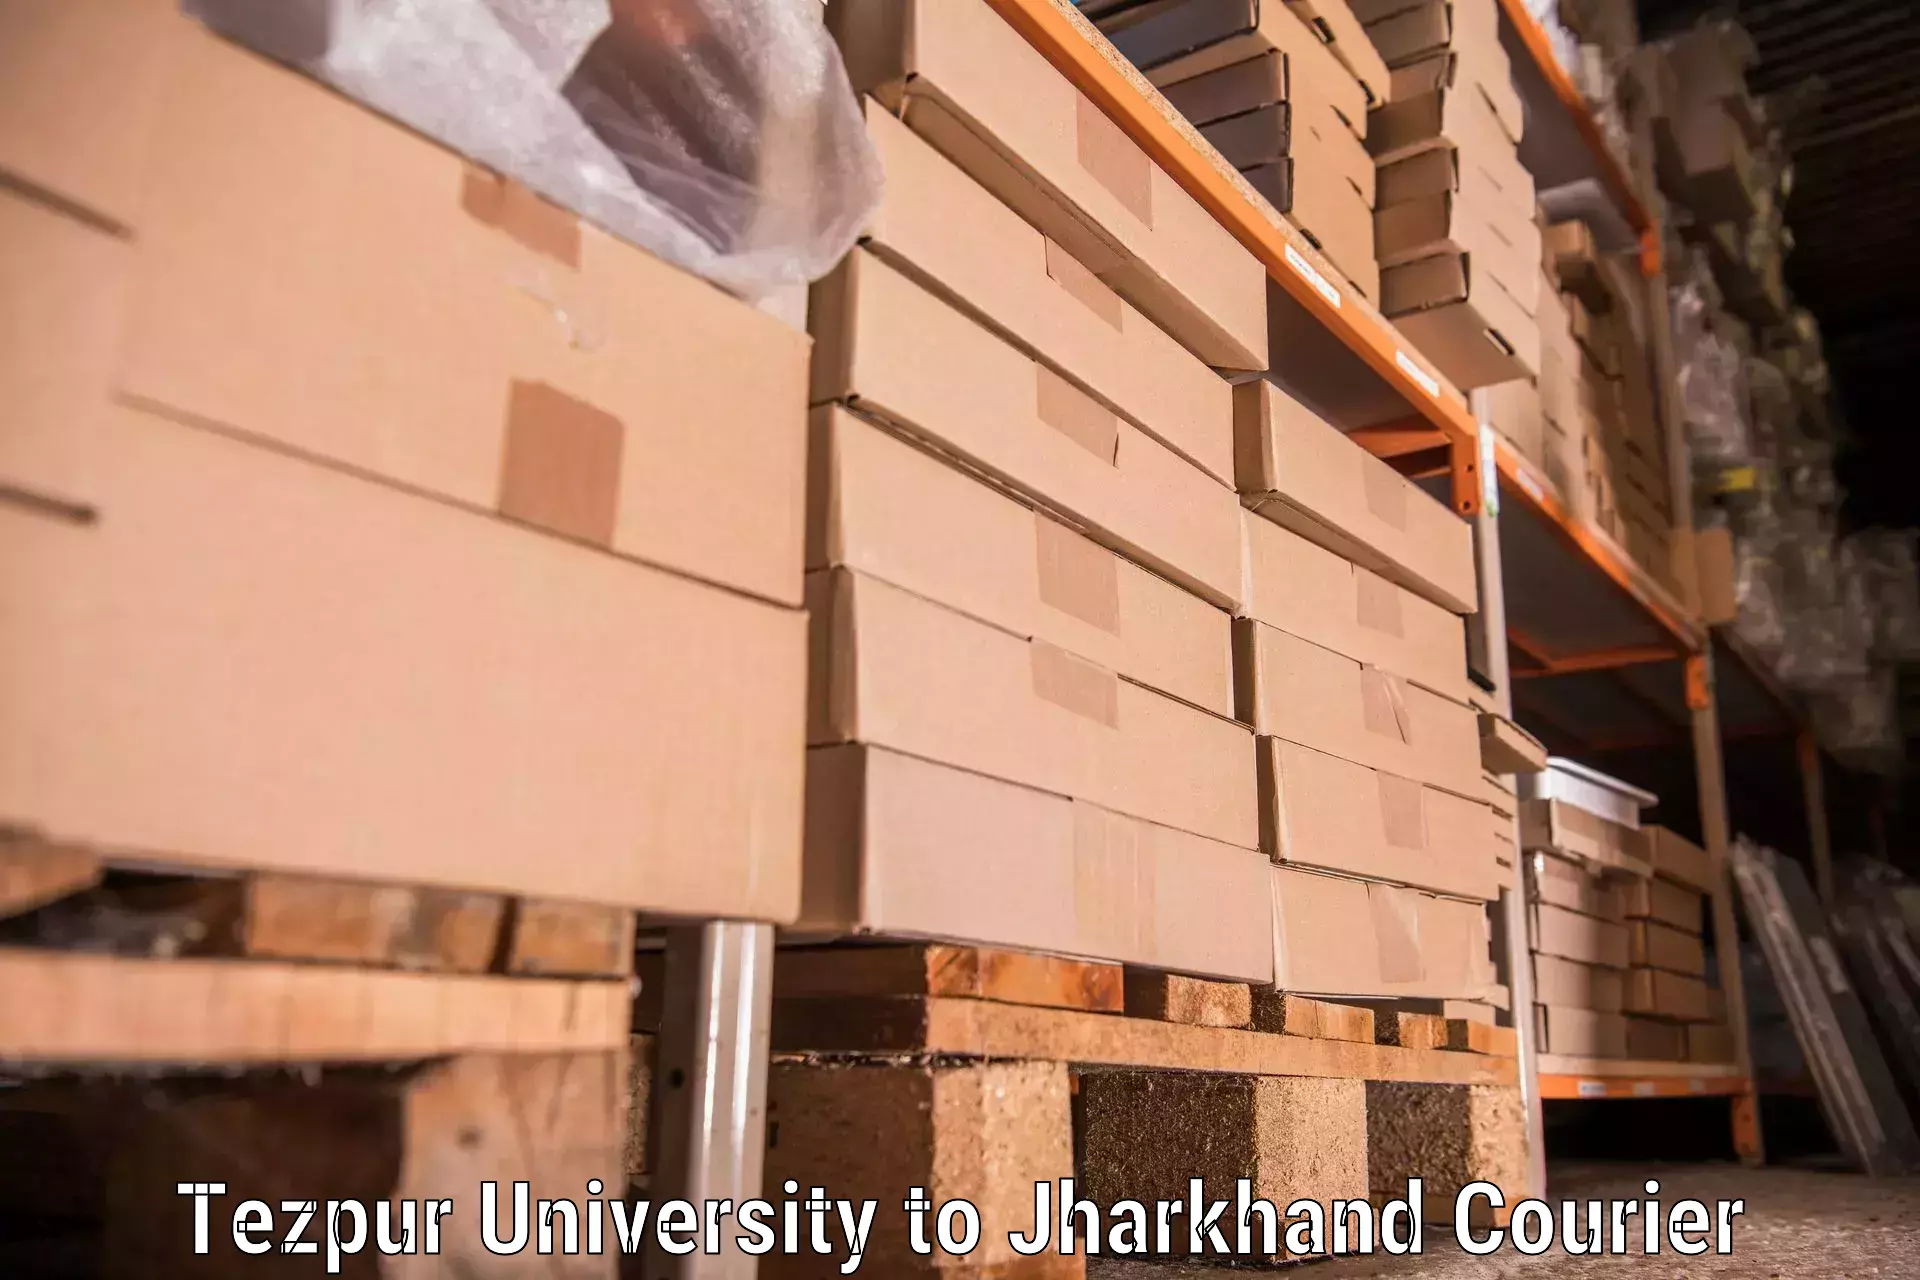 Household goods shipping in Tezpur University to Bagodar